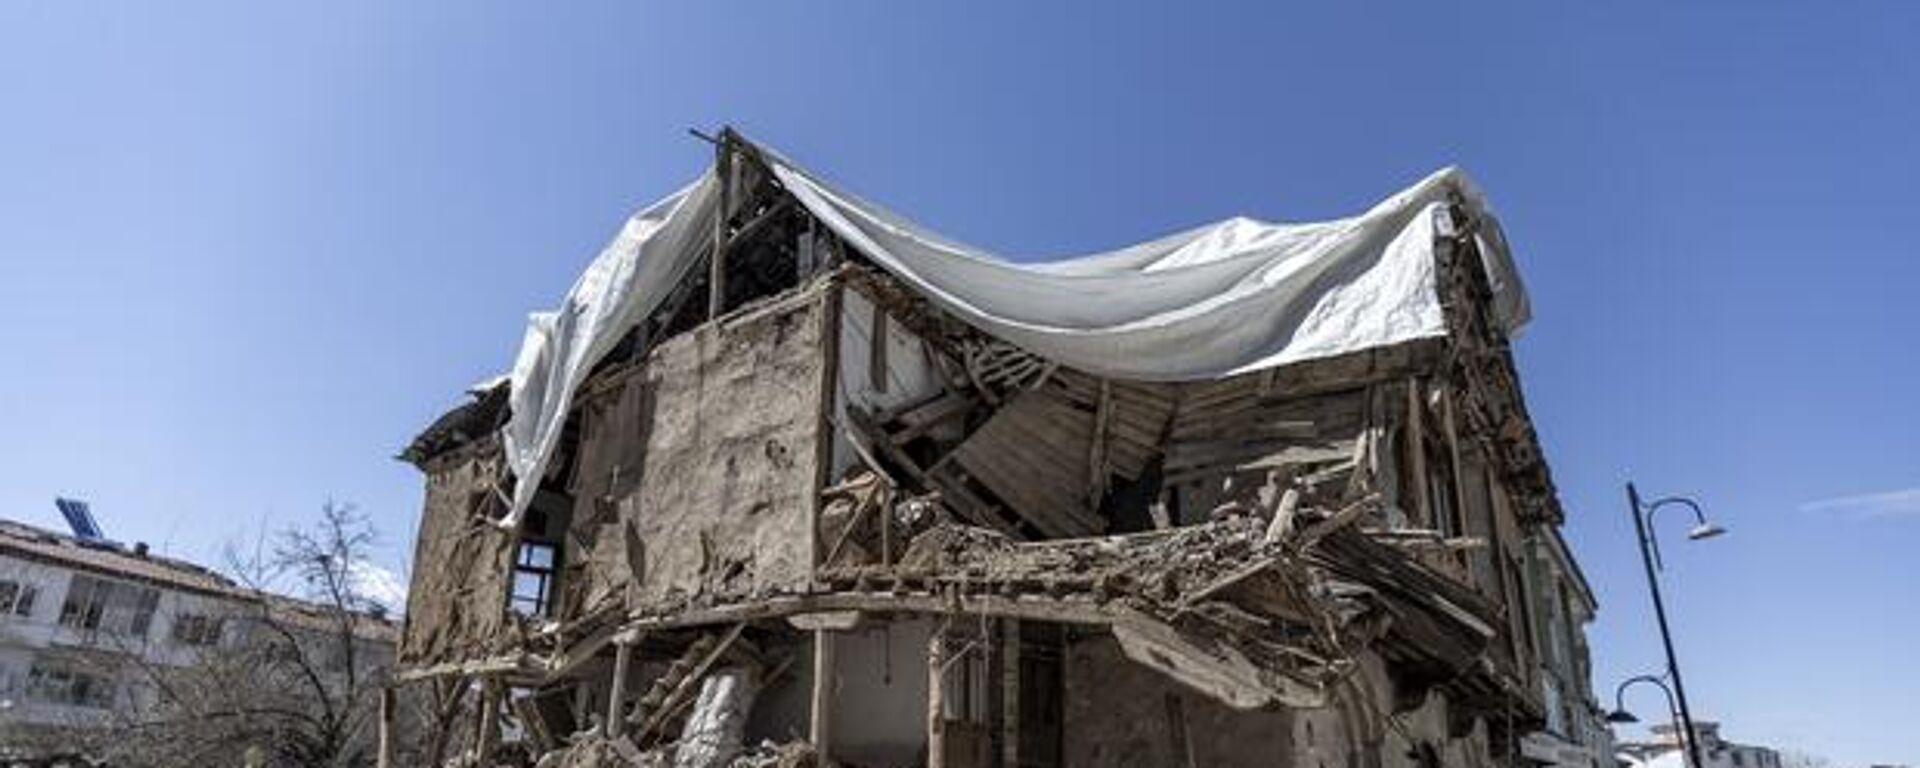 Kahramanmaraş merkezli 6 Şubat'taki depremlerin büyük yıkıma neden olduğu Malatya'da enkaz kaldırma çalışmaları sürüyor. - Sputnik Türkiye, 1920, 02.04.2023